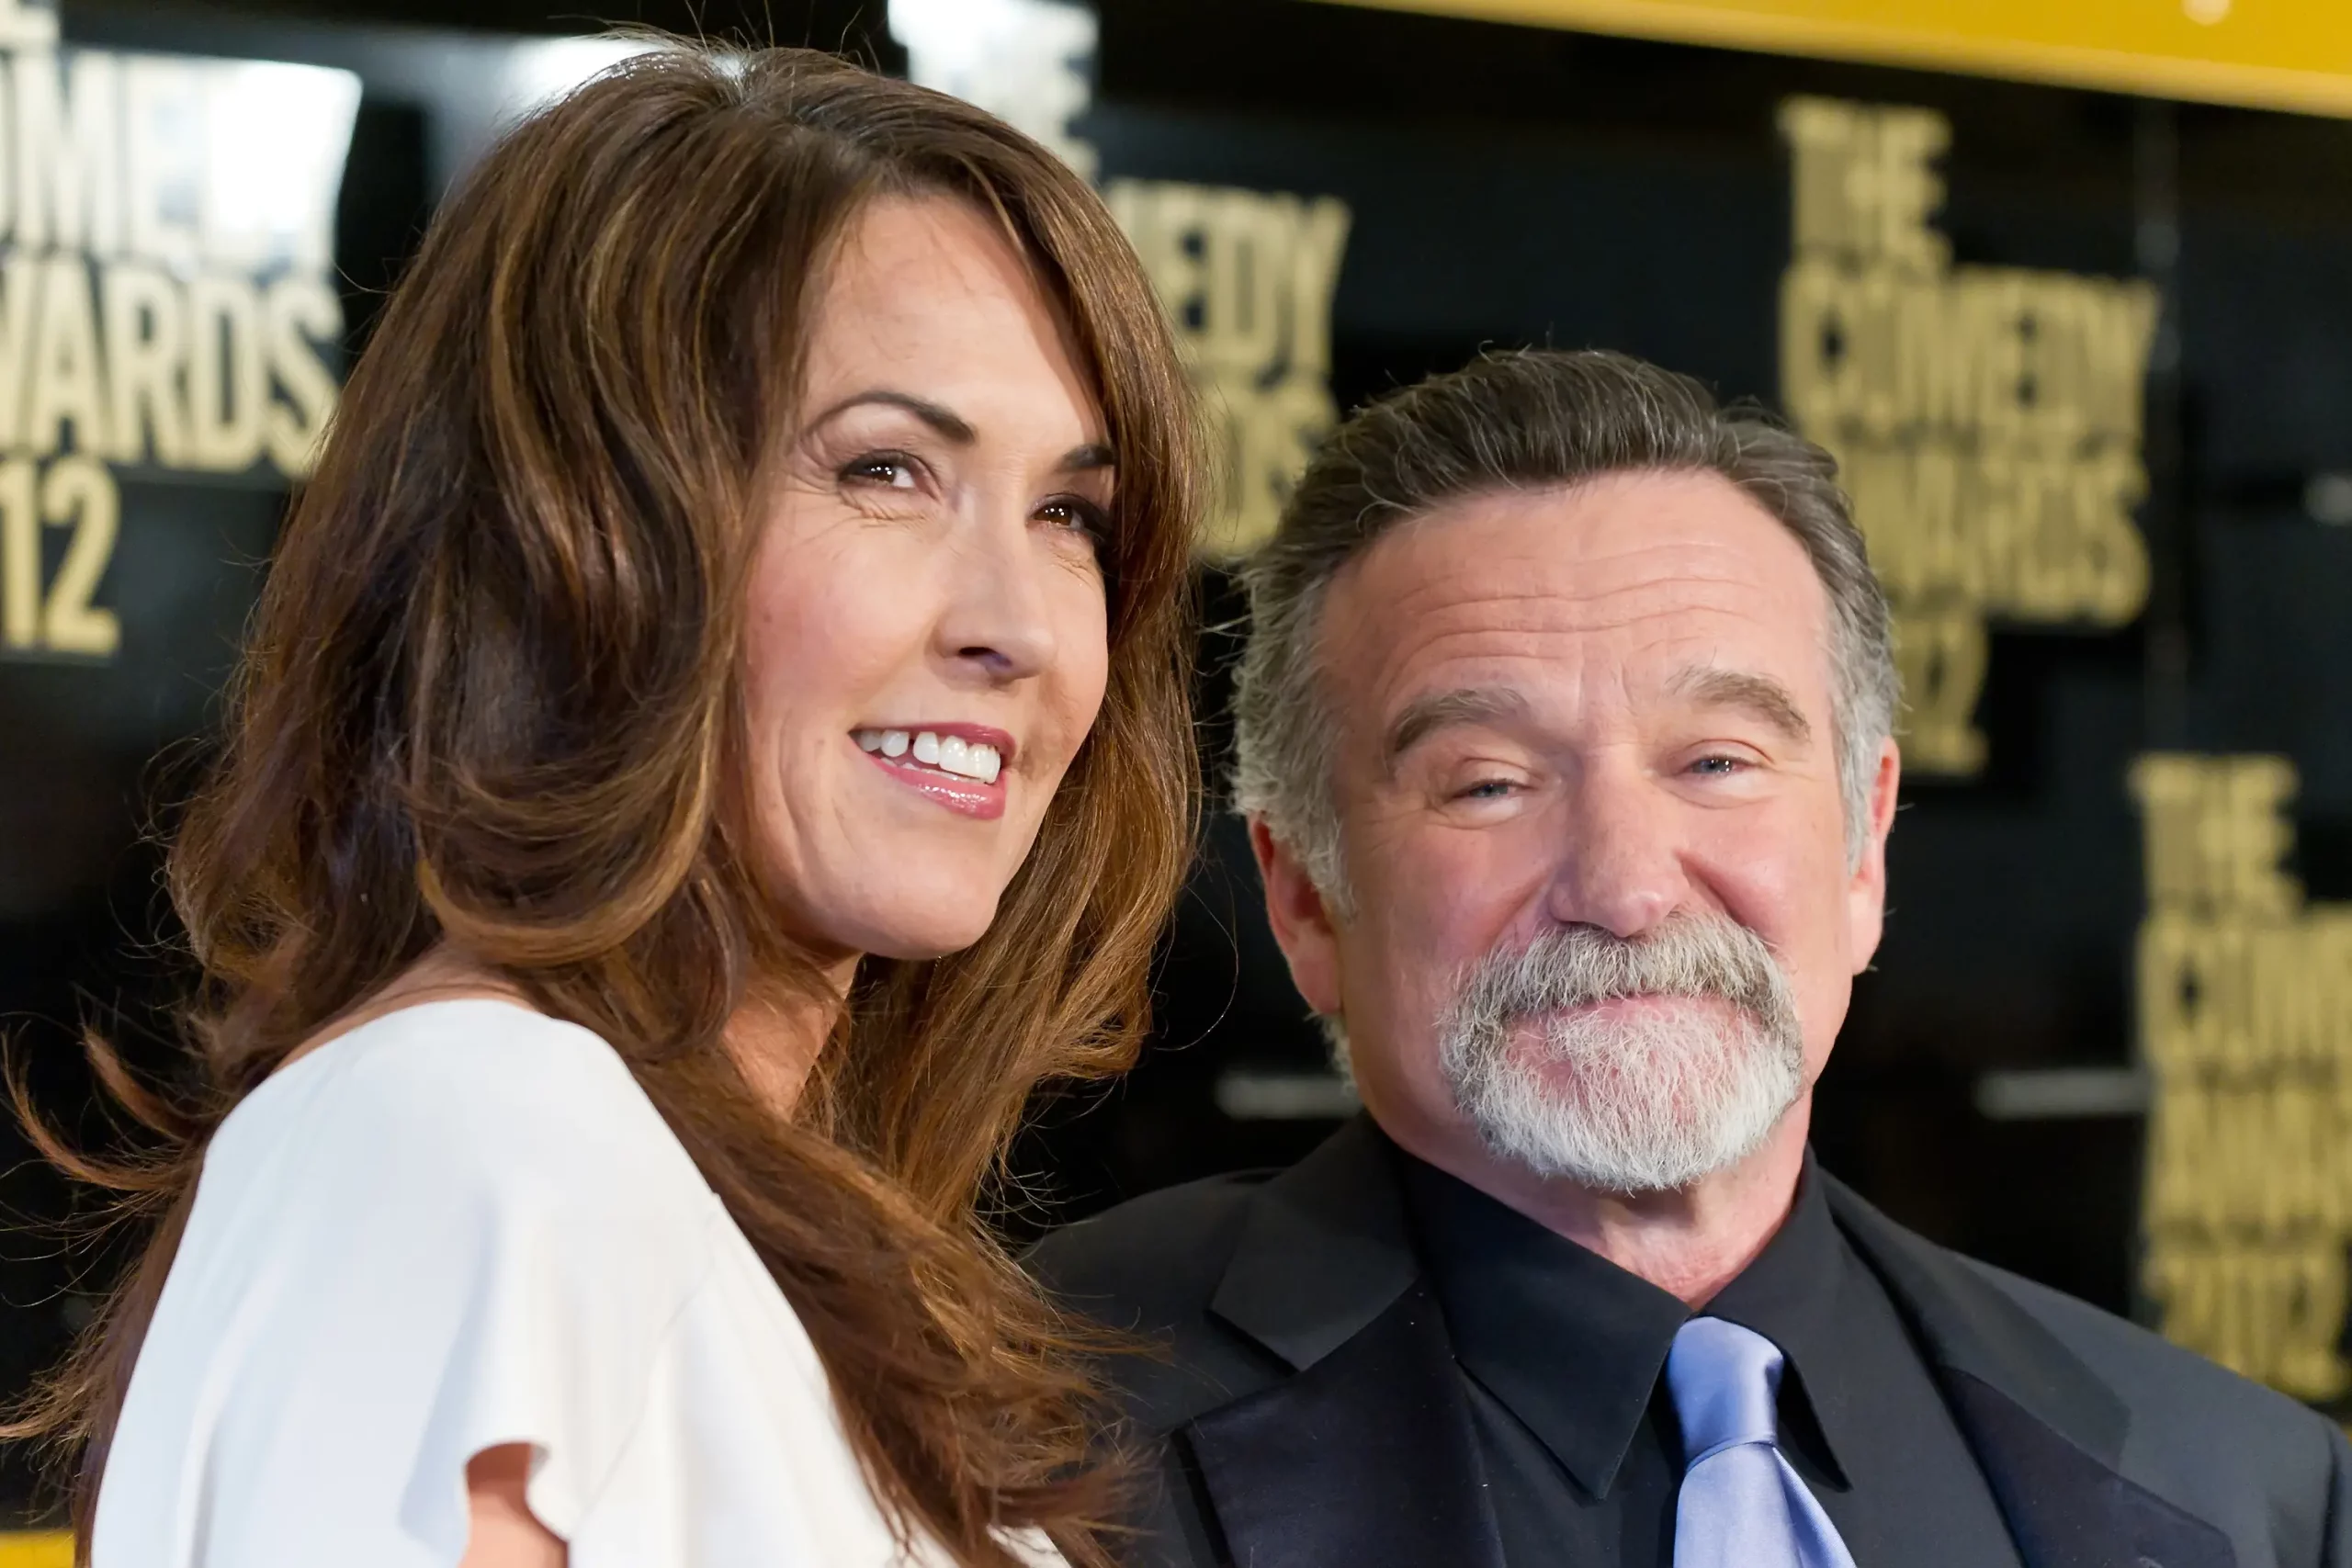 Robin Williams and Susan Schneider